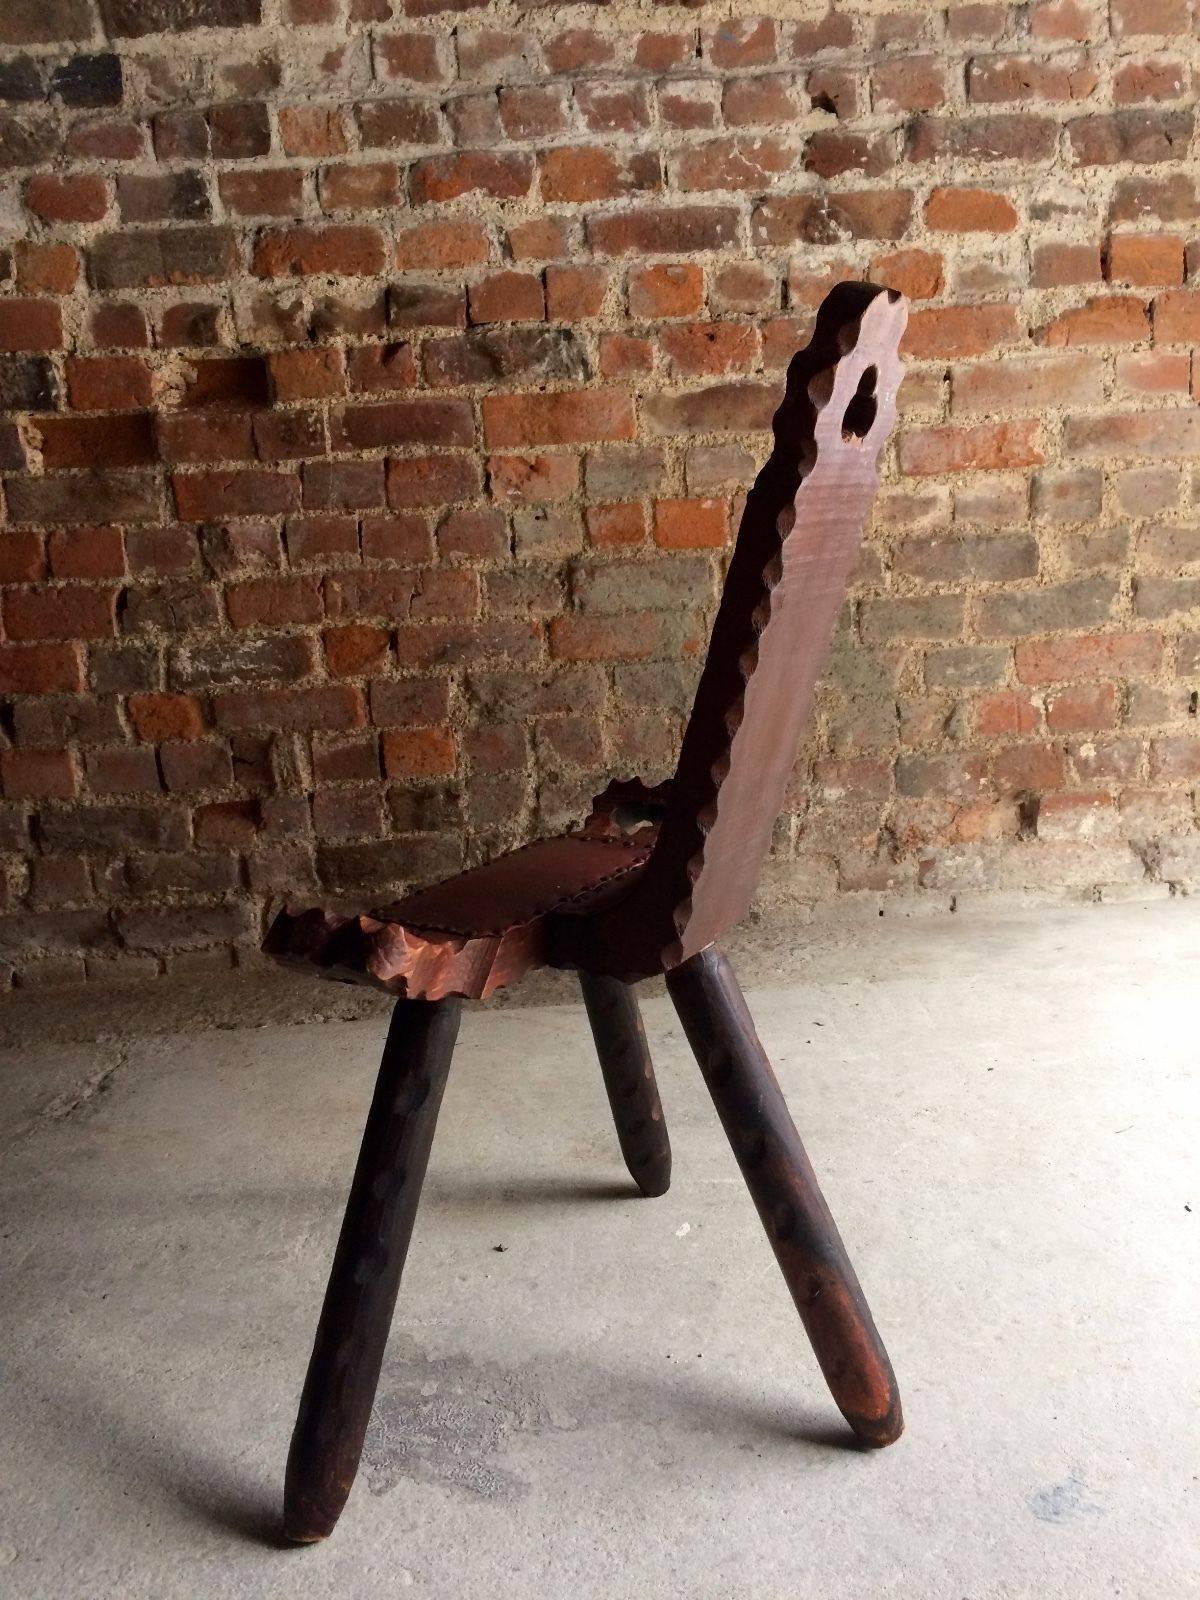 3 legged chair antique